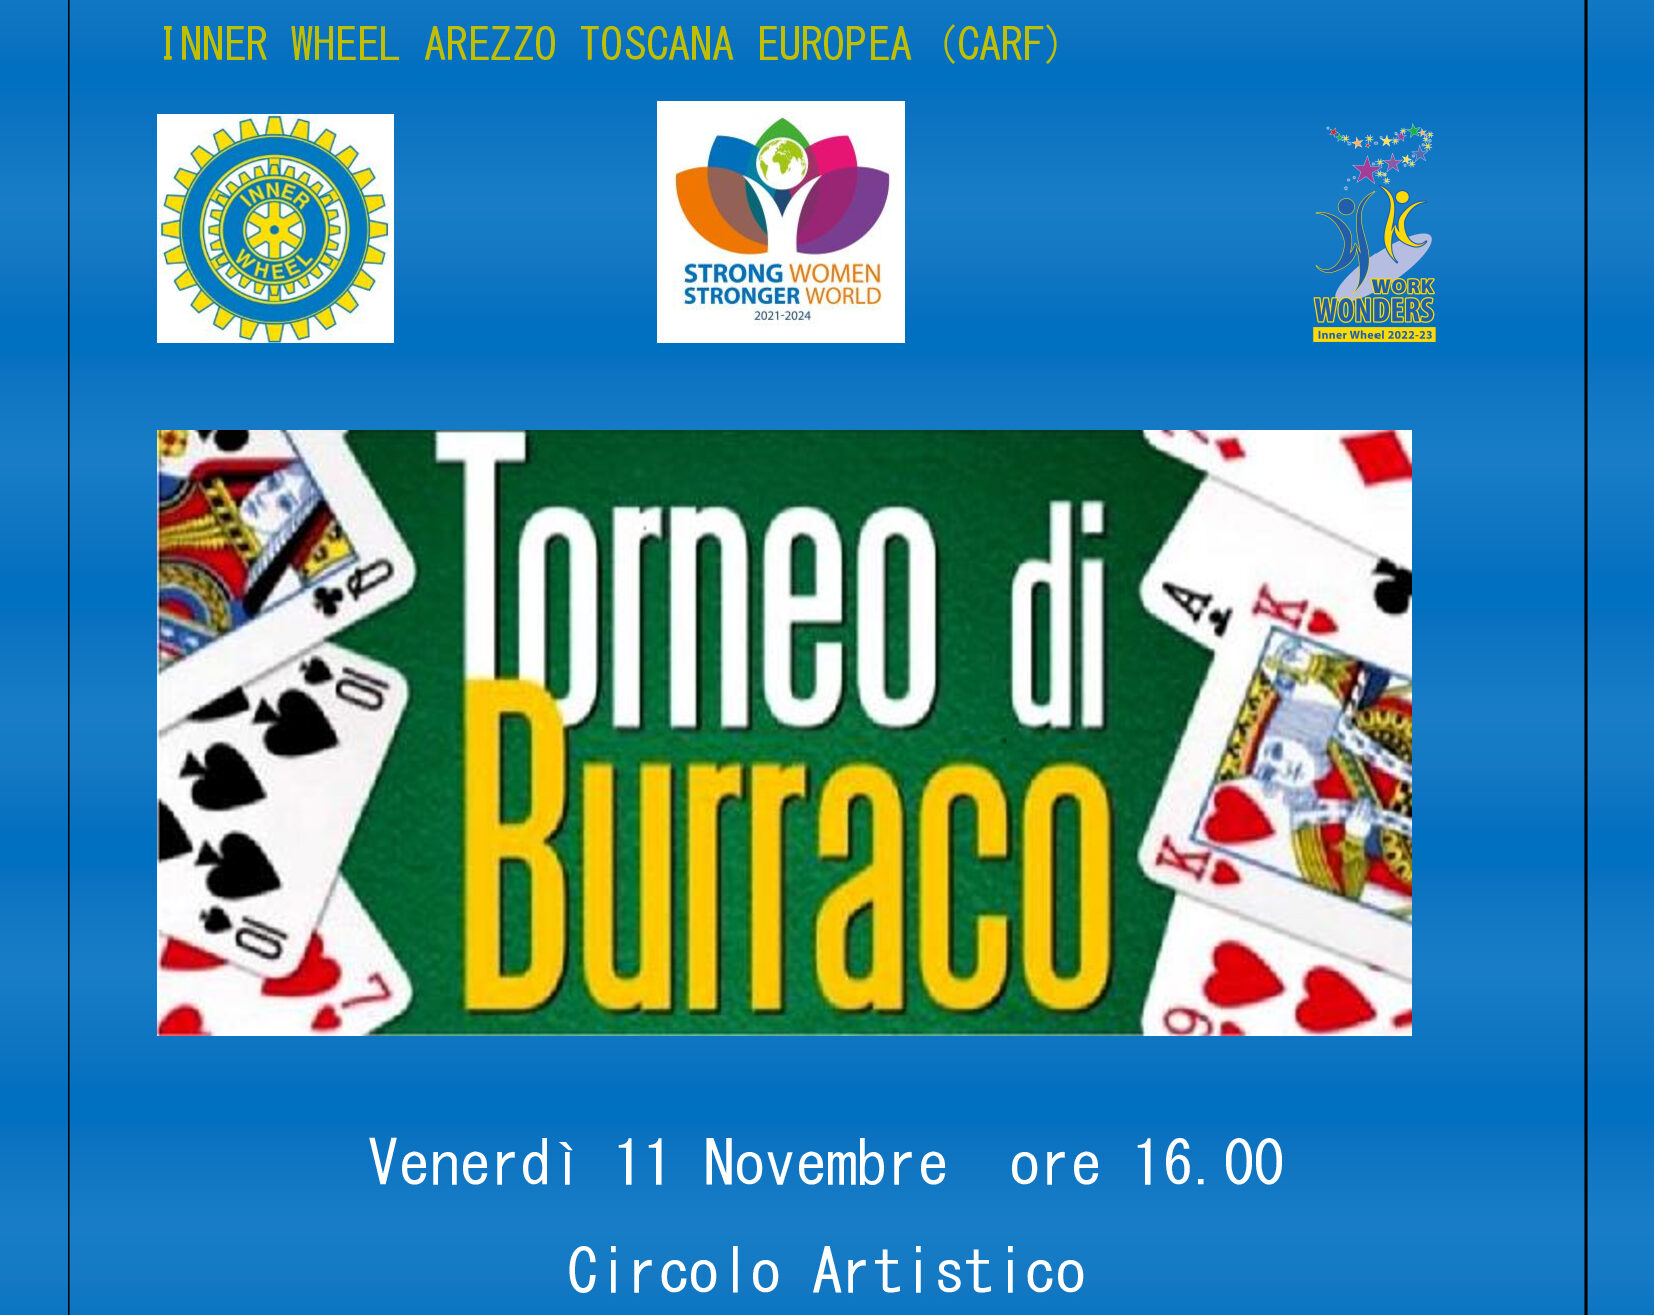 Eventi di beneficenza del Club Inner Wheel Arezzo Toscana Europea